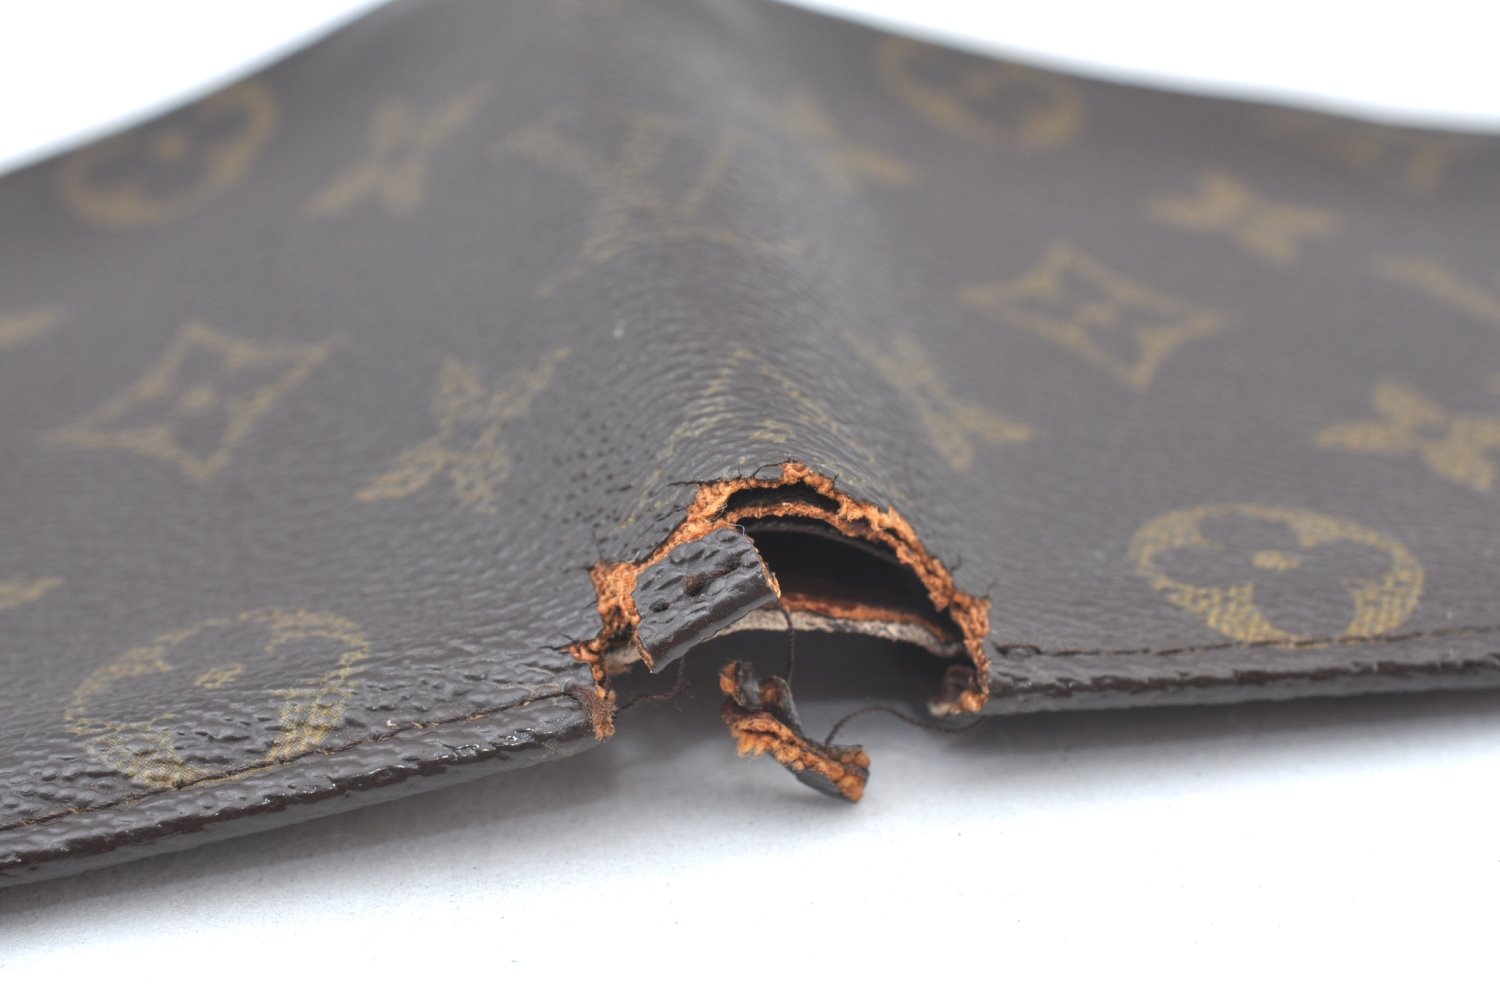 Authentic Louis Vuitton Monogram Portefeuille Marco Purse Wallet Old Model K6150